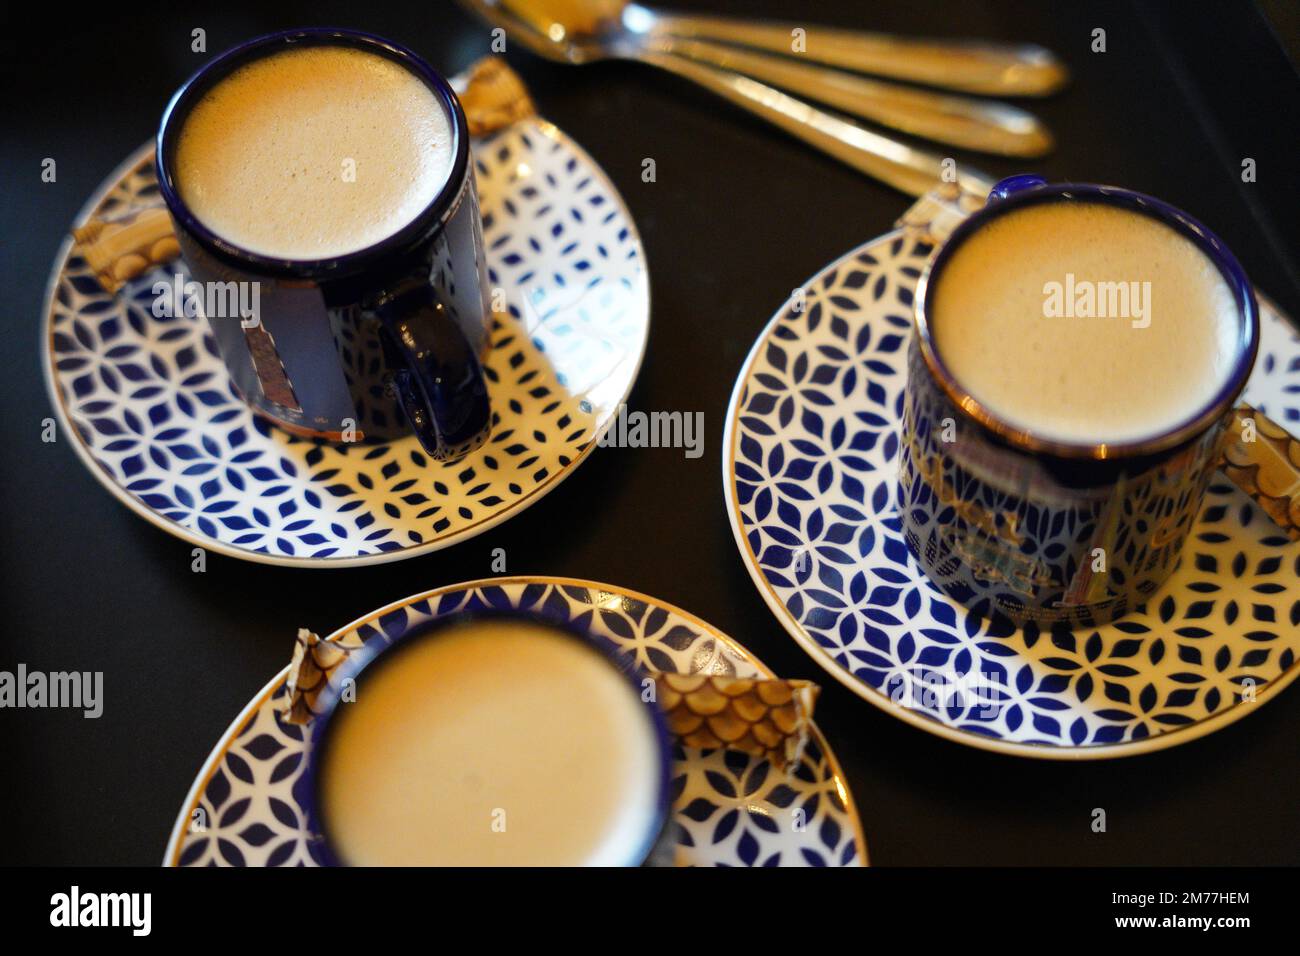 Türkischer oder französischer Kaffee mit Schaumgerichten und traditionellem Servierset. Blau-weißes Keramikkaffee-Set Stockfoto